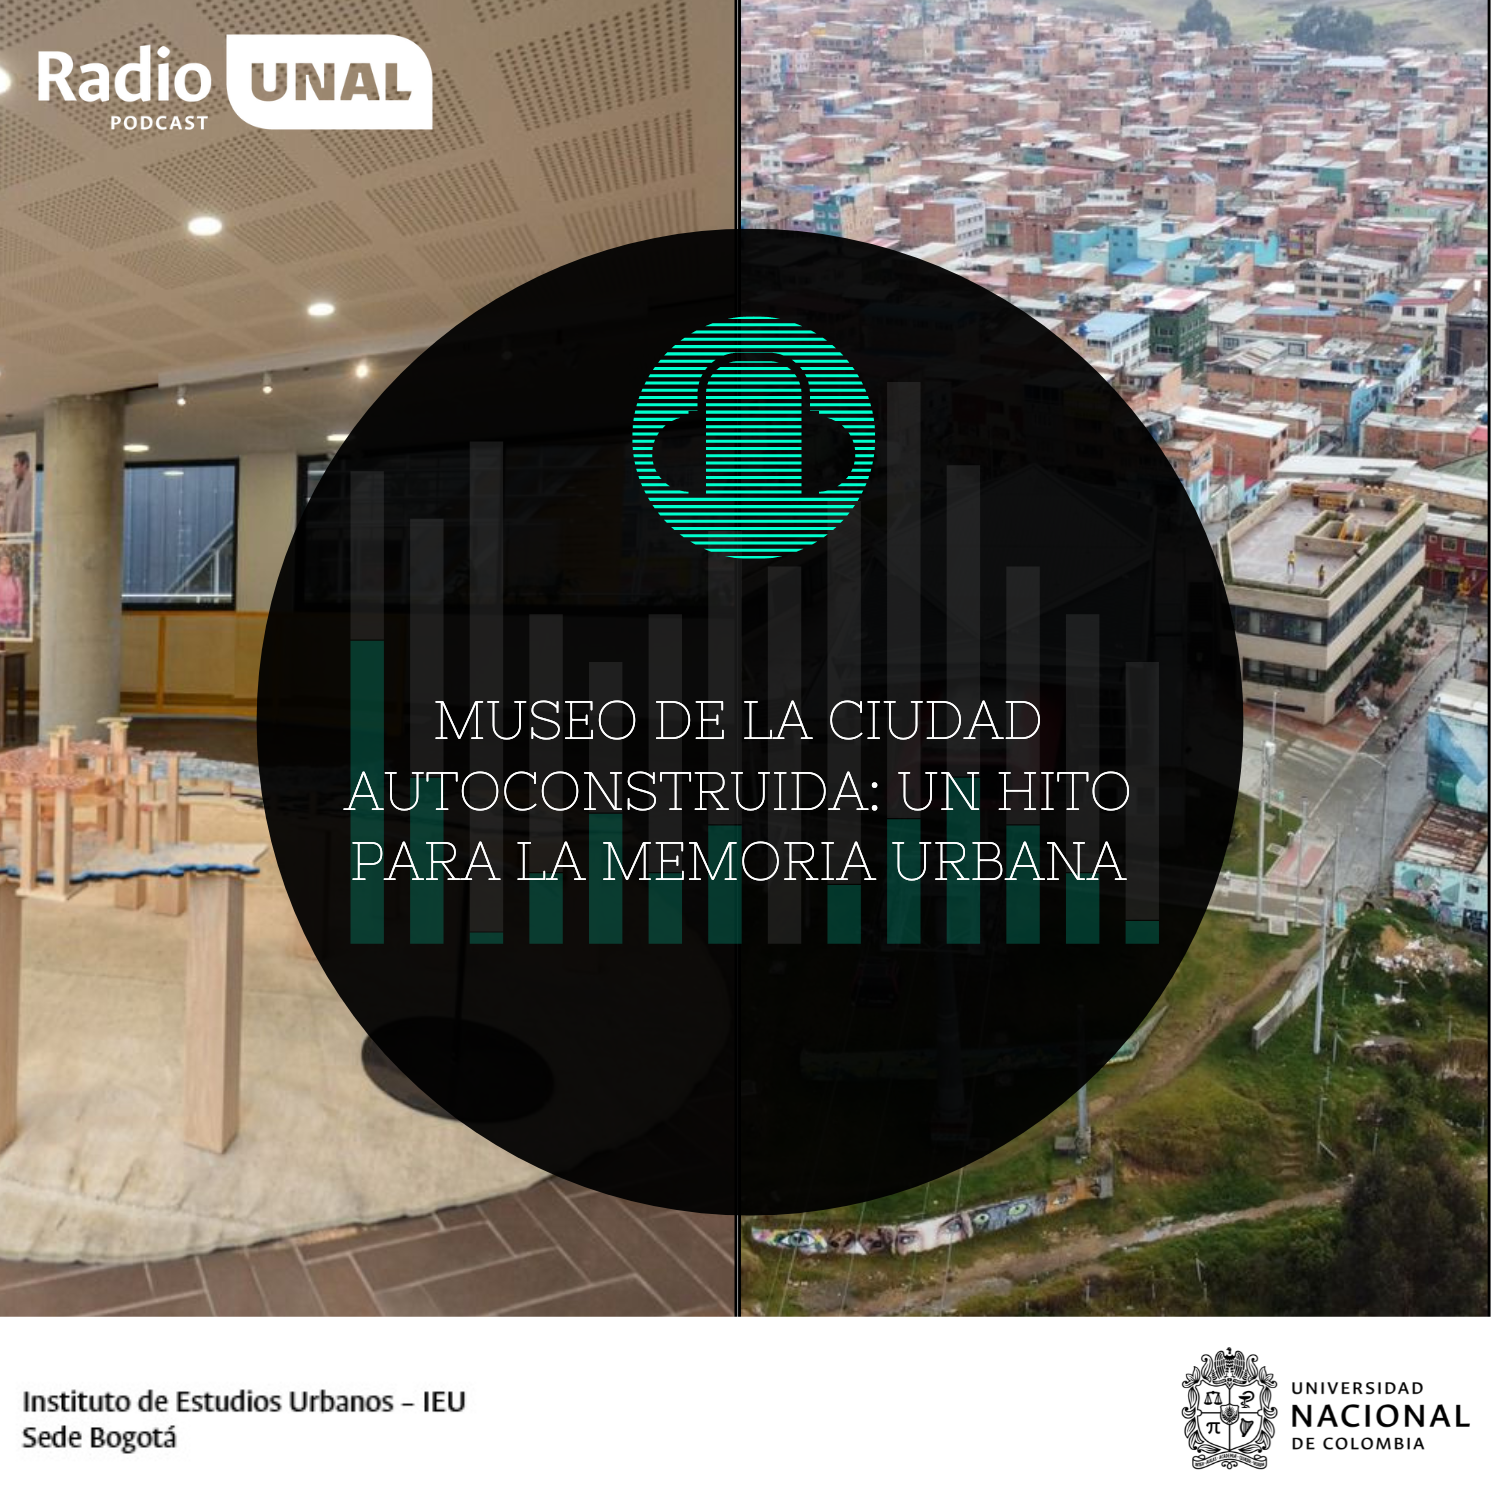 #PodcastRadioUNAL Museo de la ciudad autoconstruida: un hito para la memoria urbana